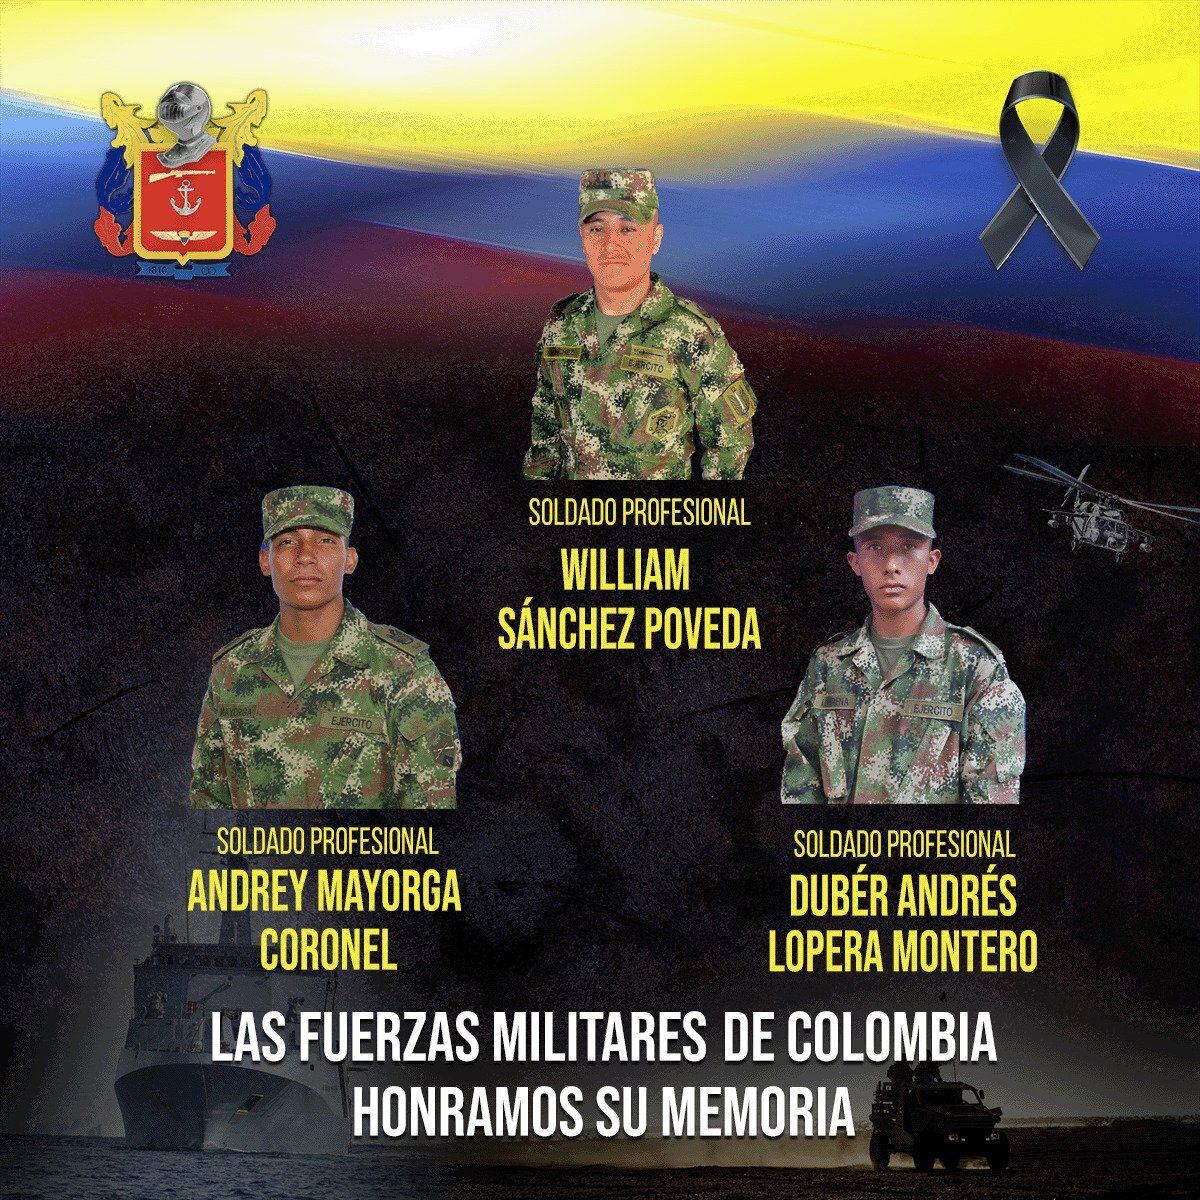 Los soldados asesinados fueron identificados como José Sánchez, Dúber Loperena y Andrey Mayorga, se llevarán a cabo ceremonias de rendición de honores militares en sus lugares de origen.